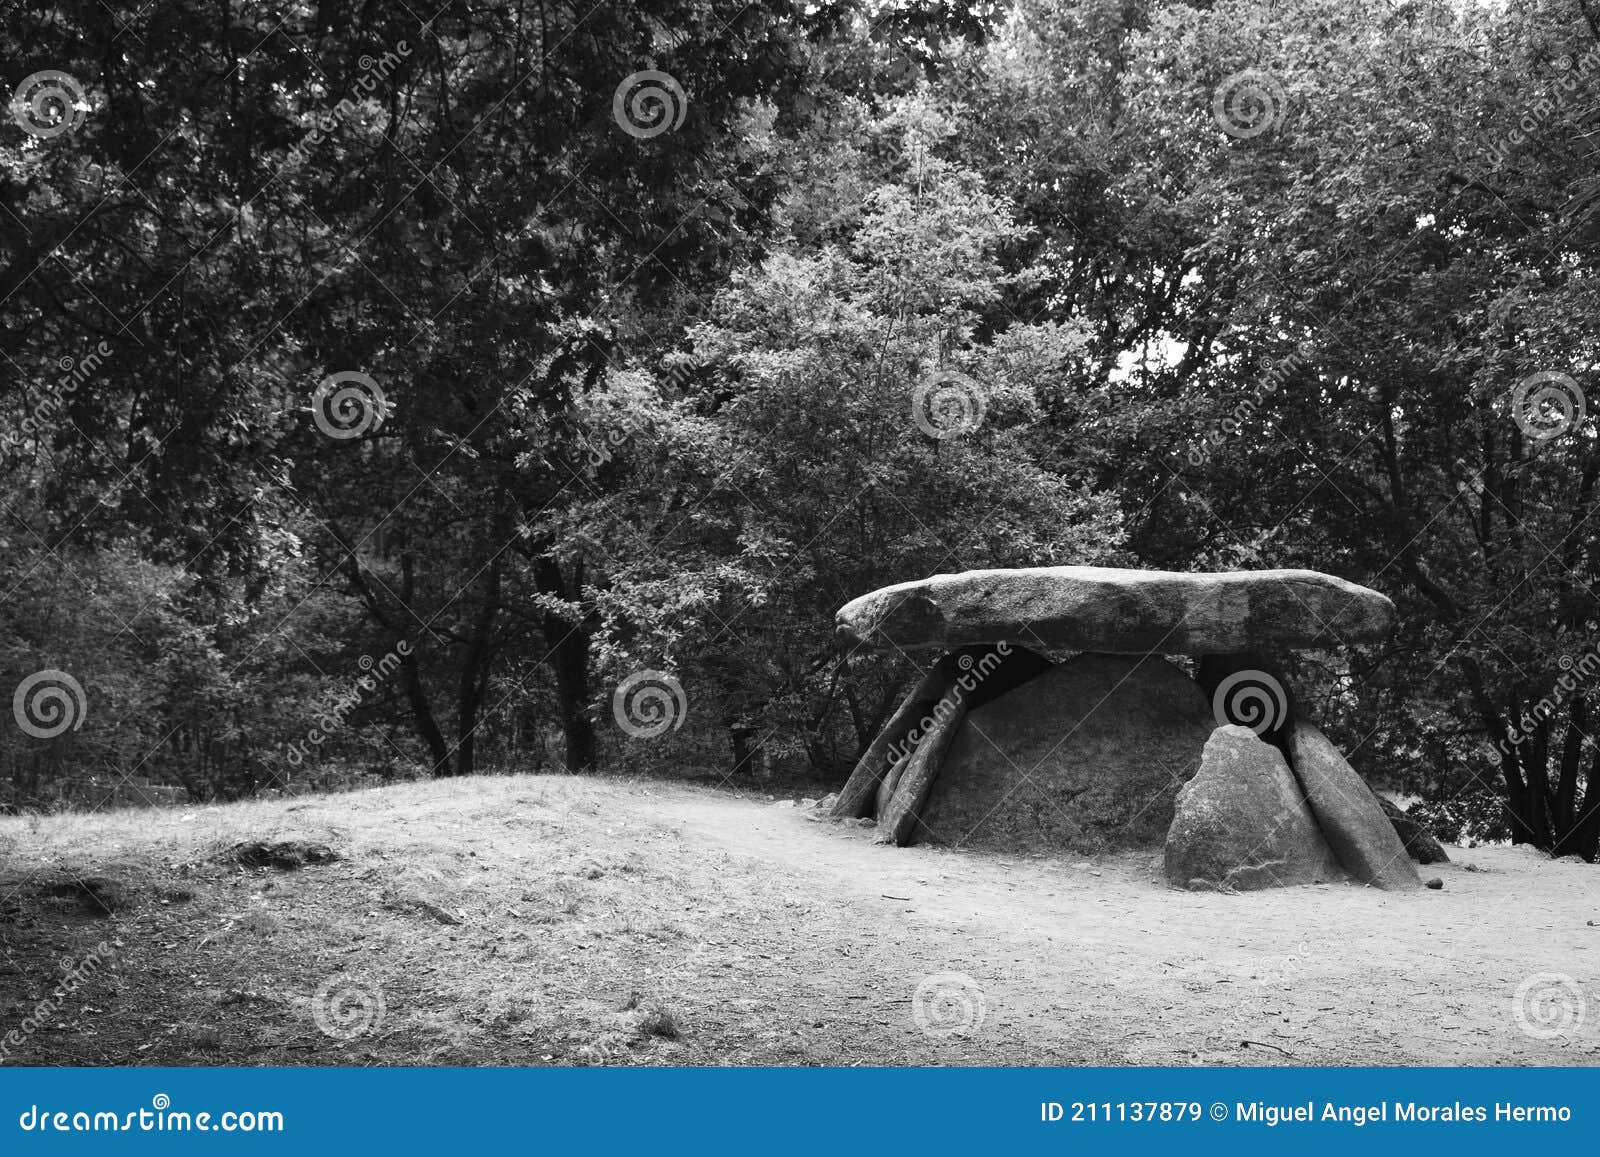 axeitos dolmen, a prehistoric megalithic construction